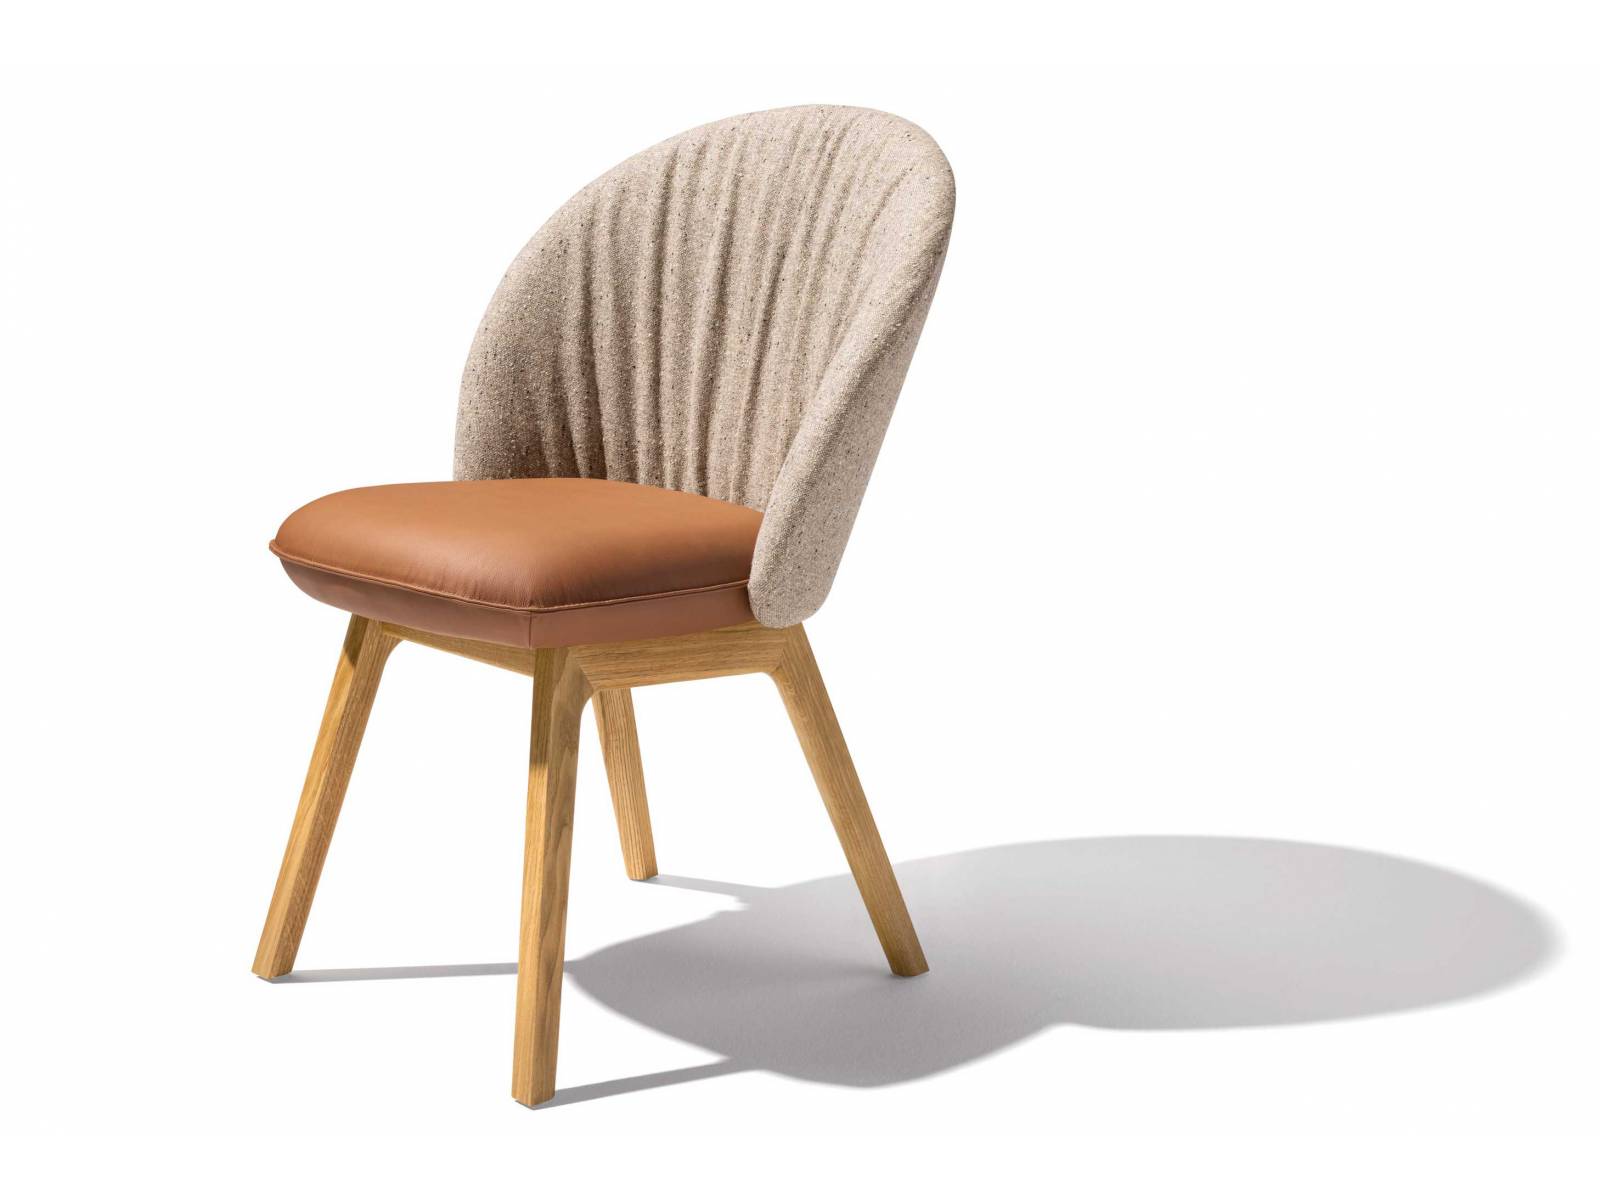 «Flor» ist ein Garant für Komfort und Wohnlichkeit. Ein schönes Detail bei diesem Stuhl ist der raffinierte Faltenwurf auf der Innenseite der Rückenlehne. Mit Textil bezogen, bildet diese einen attraktiven Kontrast zur Sitzfläche in Leder. TEAM 7.